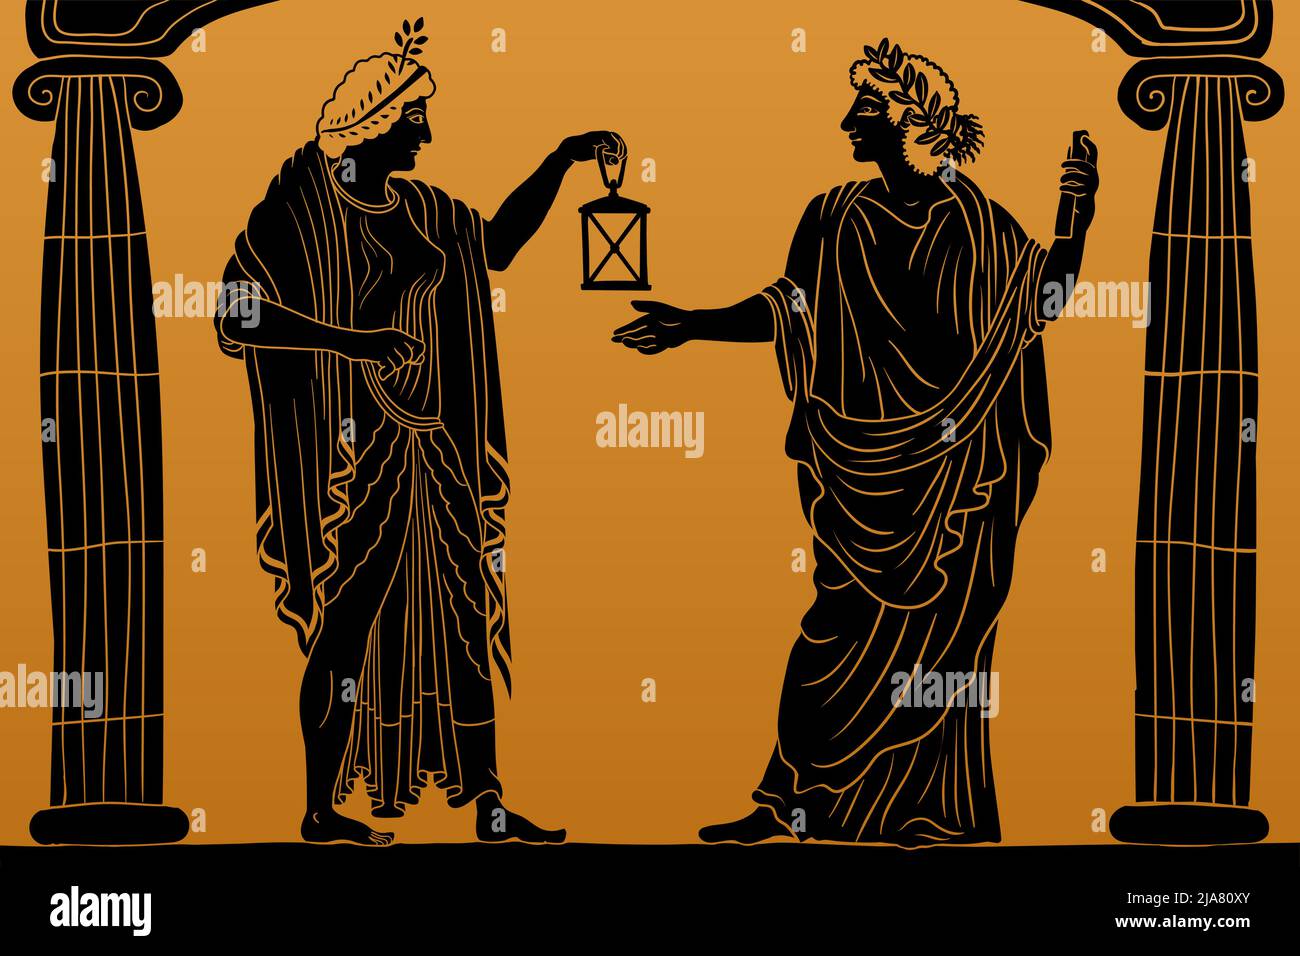 Zwei alte griechische junge Frauen mit einem Lorbeerkranz auf dem Kopf in einer Tunika und einem Umhang stehen zwischen zwei Säulen und halten eine Laterne in der Hand. Stock Vektor